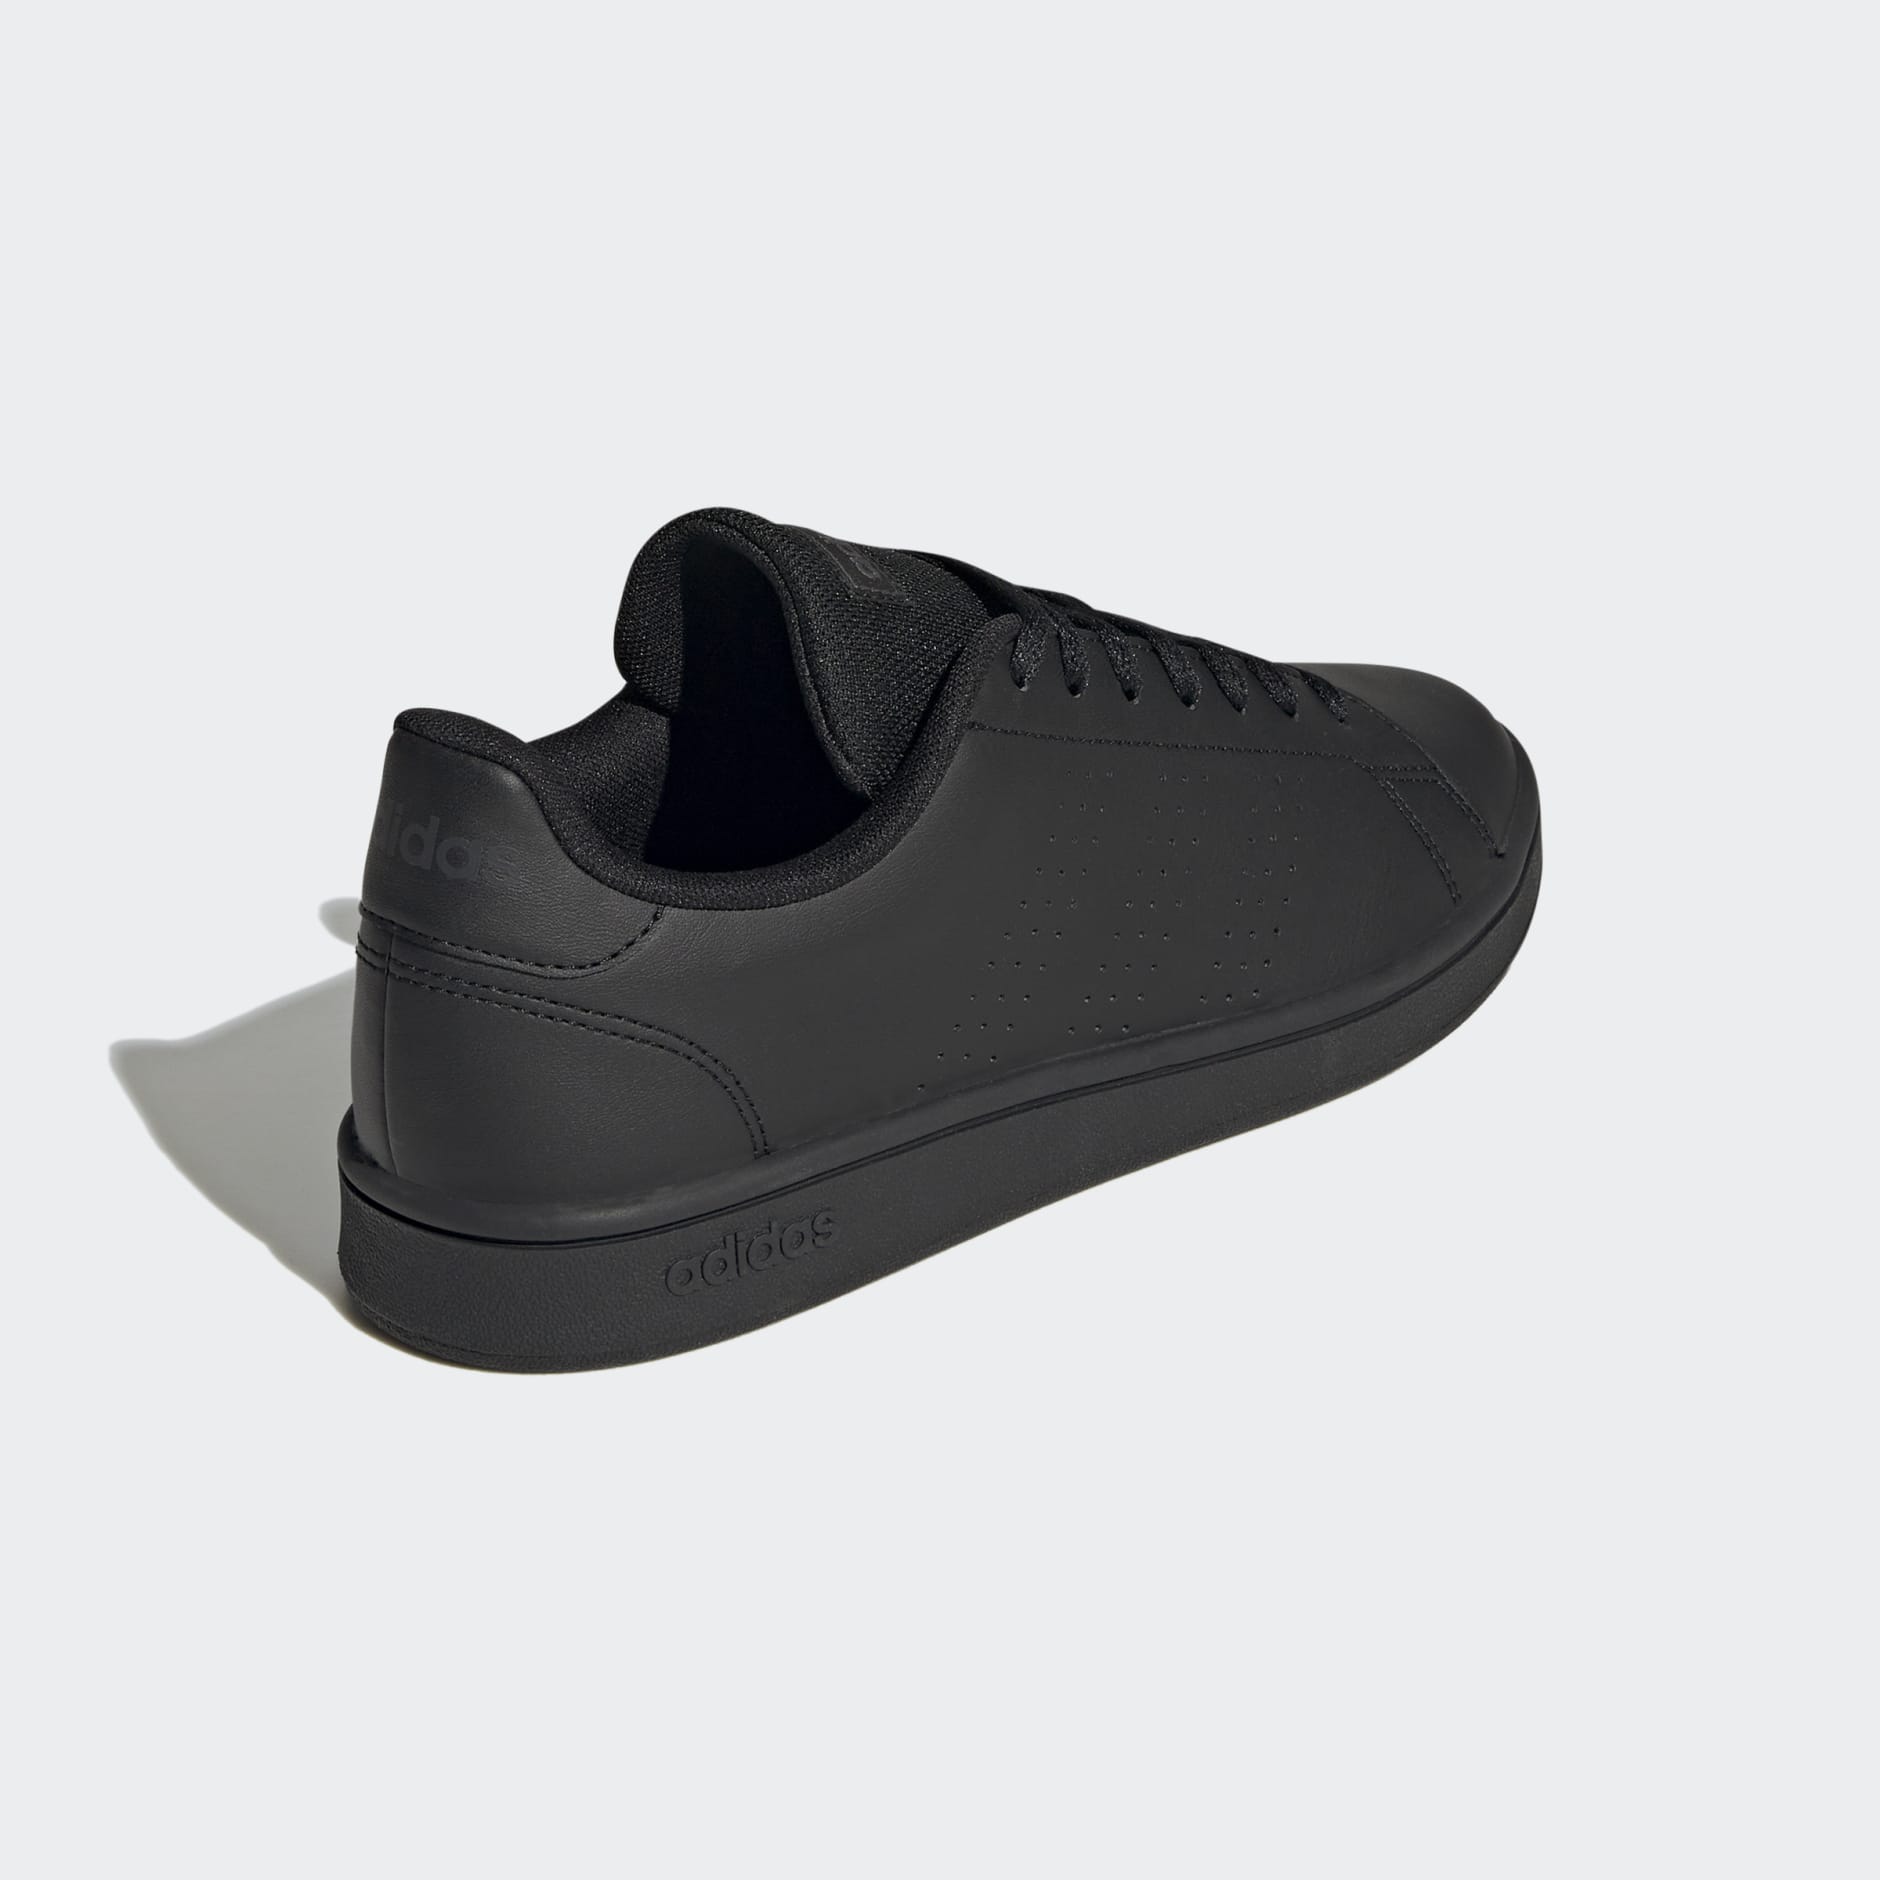 Men's Shoes - Advantage Base Court Lifestyle Shoes - Black | adidas ...